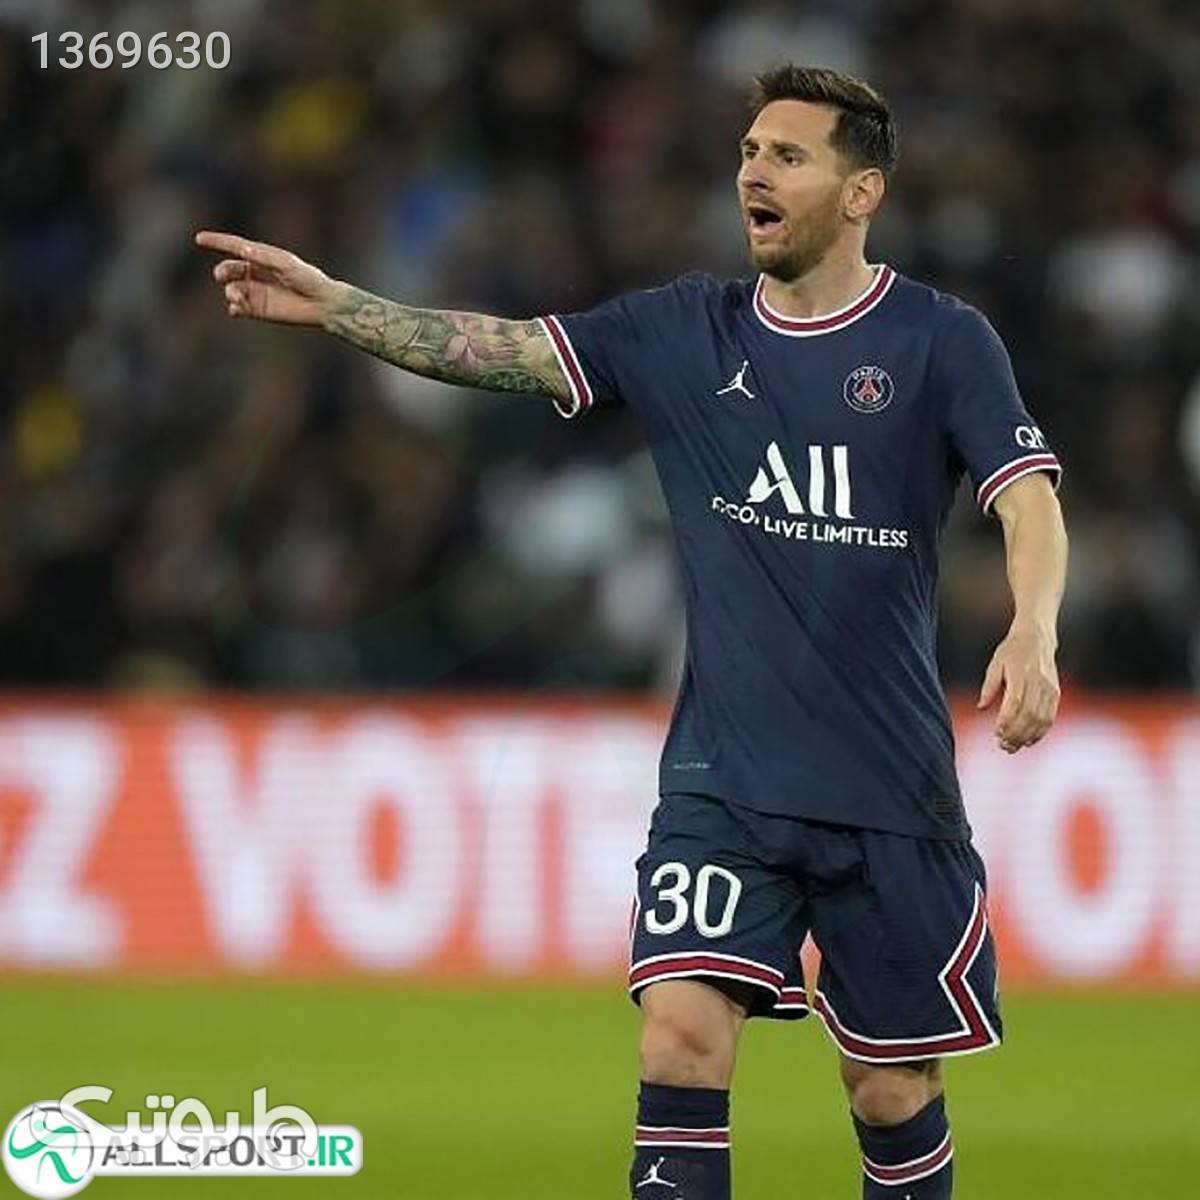 پیراهن شورت اول پاریسن ژرمن با چاپ نام و شماره مسی Paris Saint Germain 202122 Home Soccer Jersey Kit ShirtShort Messi 30 سورمه ای ست ورزشی مردانه